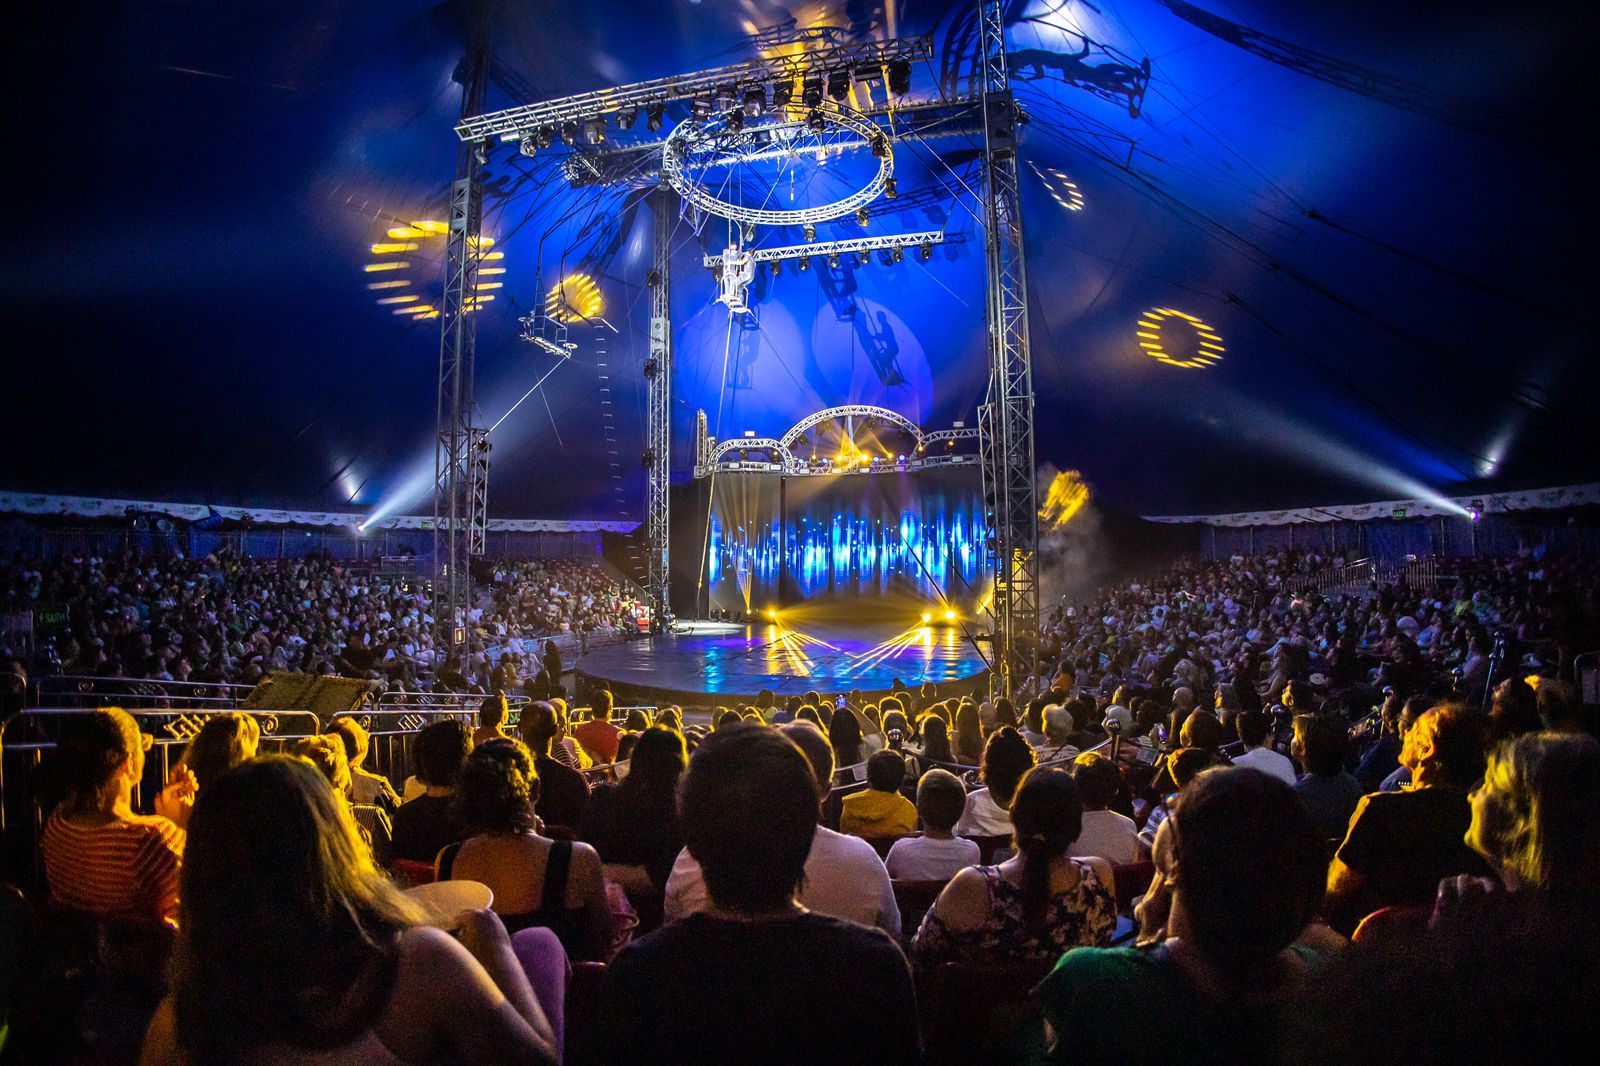 Mirage Circus entra nas últimas semanas de espetáculos em Balneário Camboriú